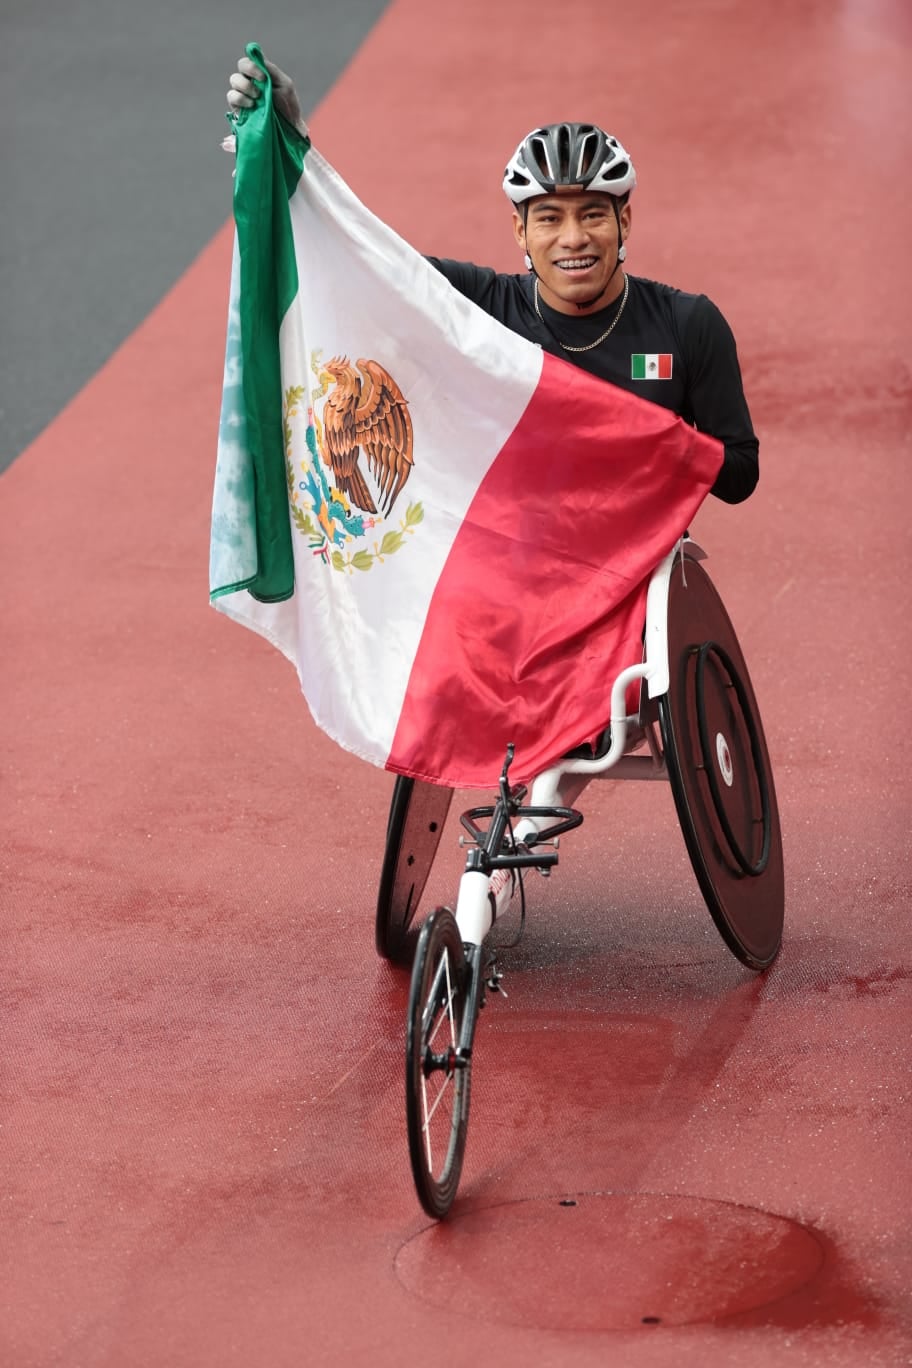 Mientras dormías: Seis medallas en el mejor día para México en los Juegos Paralímpicos de Tokio 2020